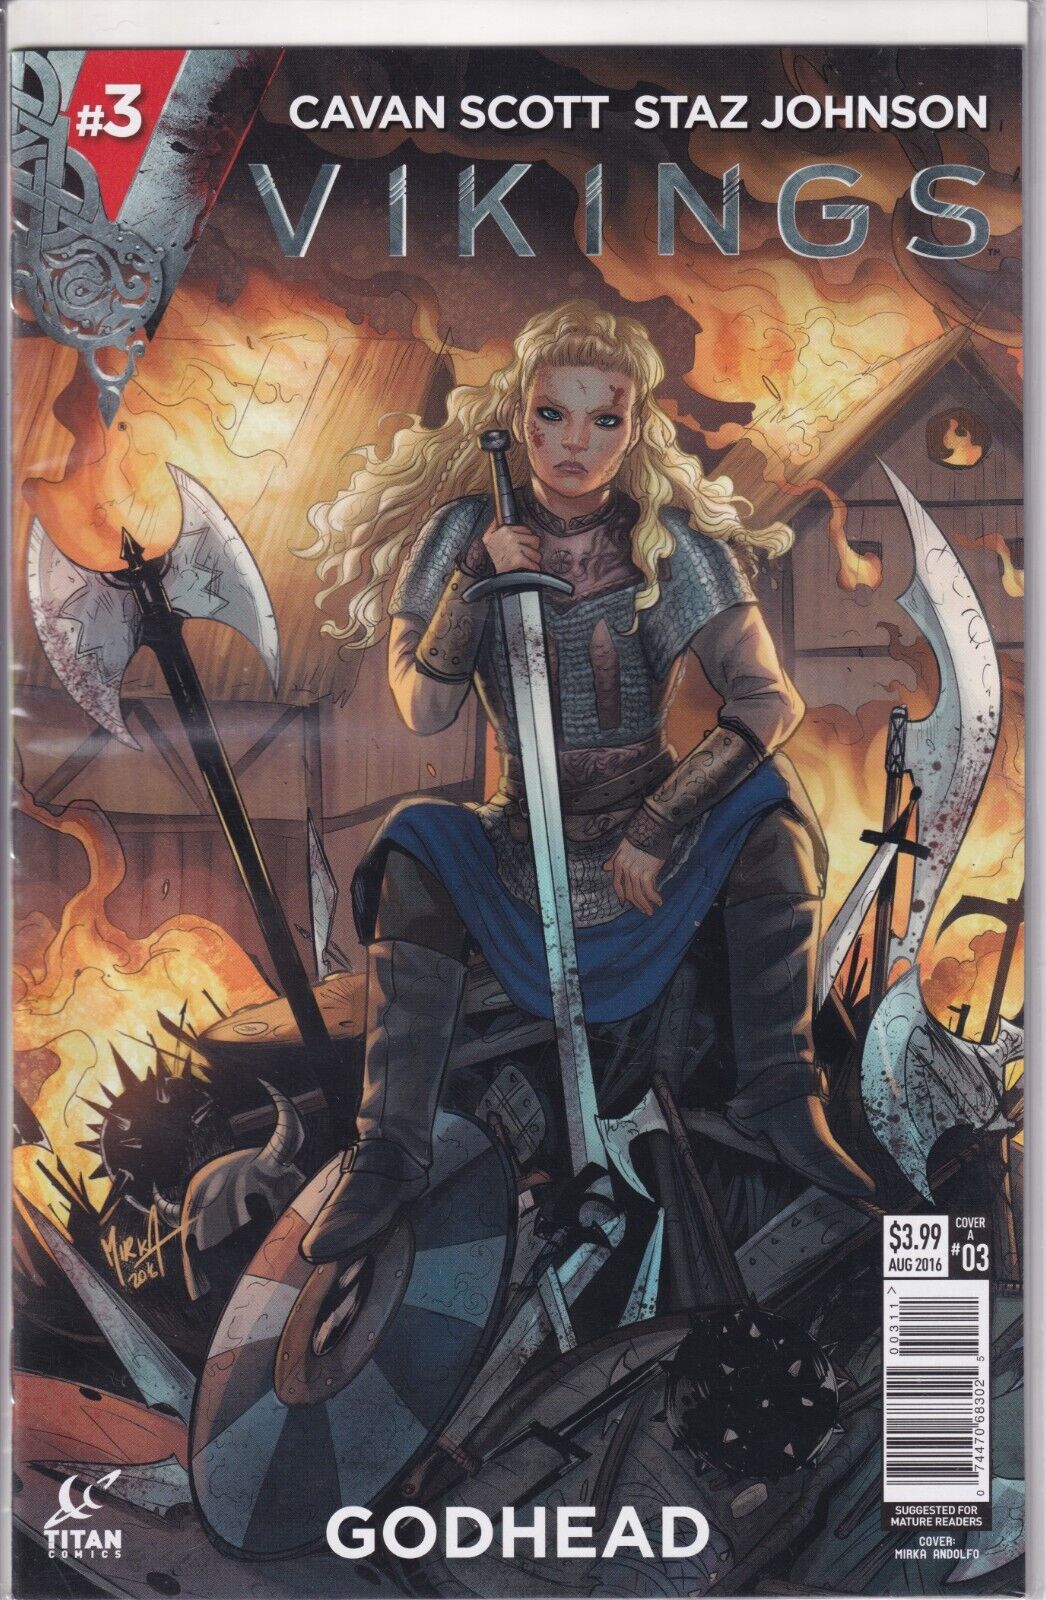 Vikings Godhead #3 Cover 1A (Titan Comics 2016) VF/NM (B&B) RARE